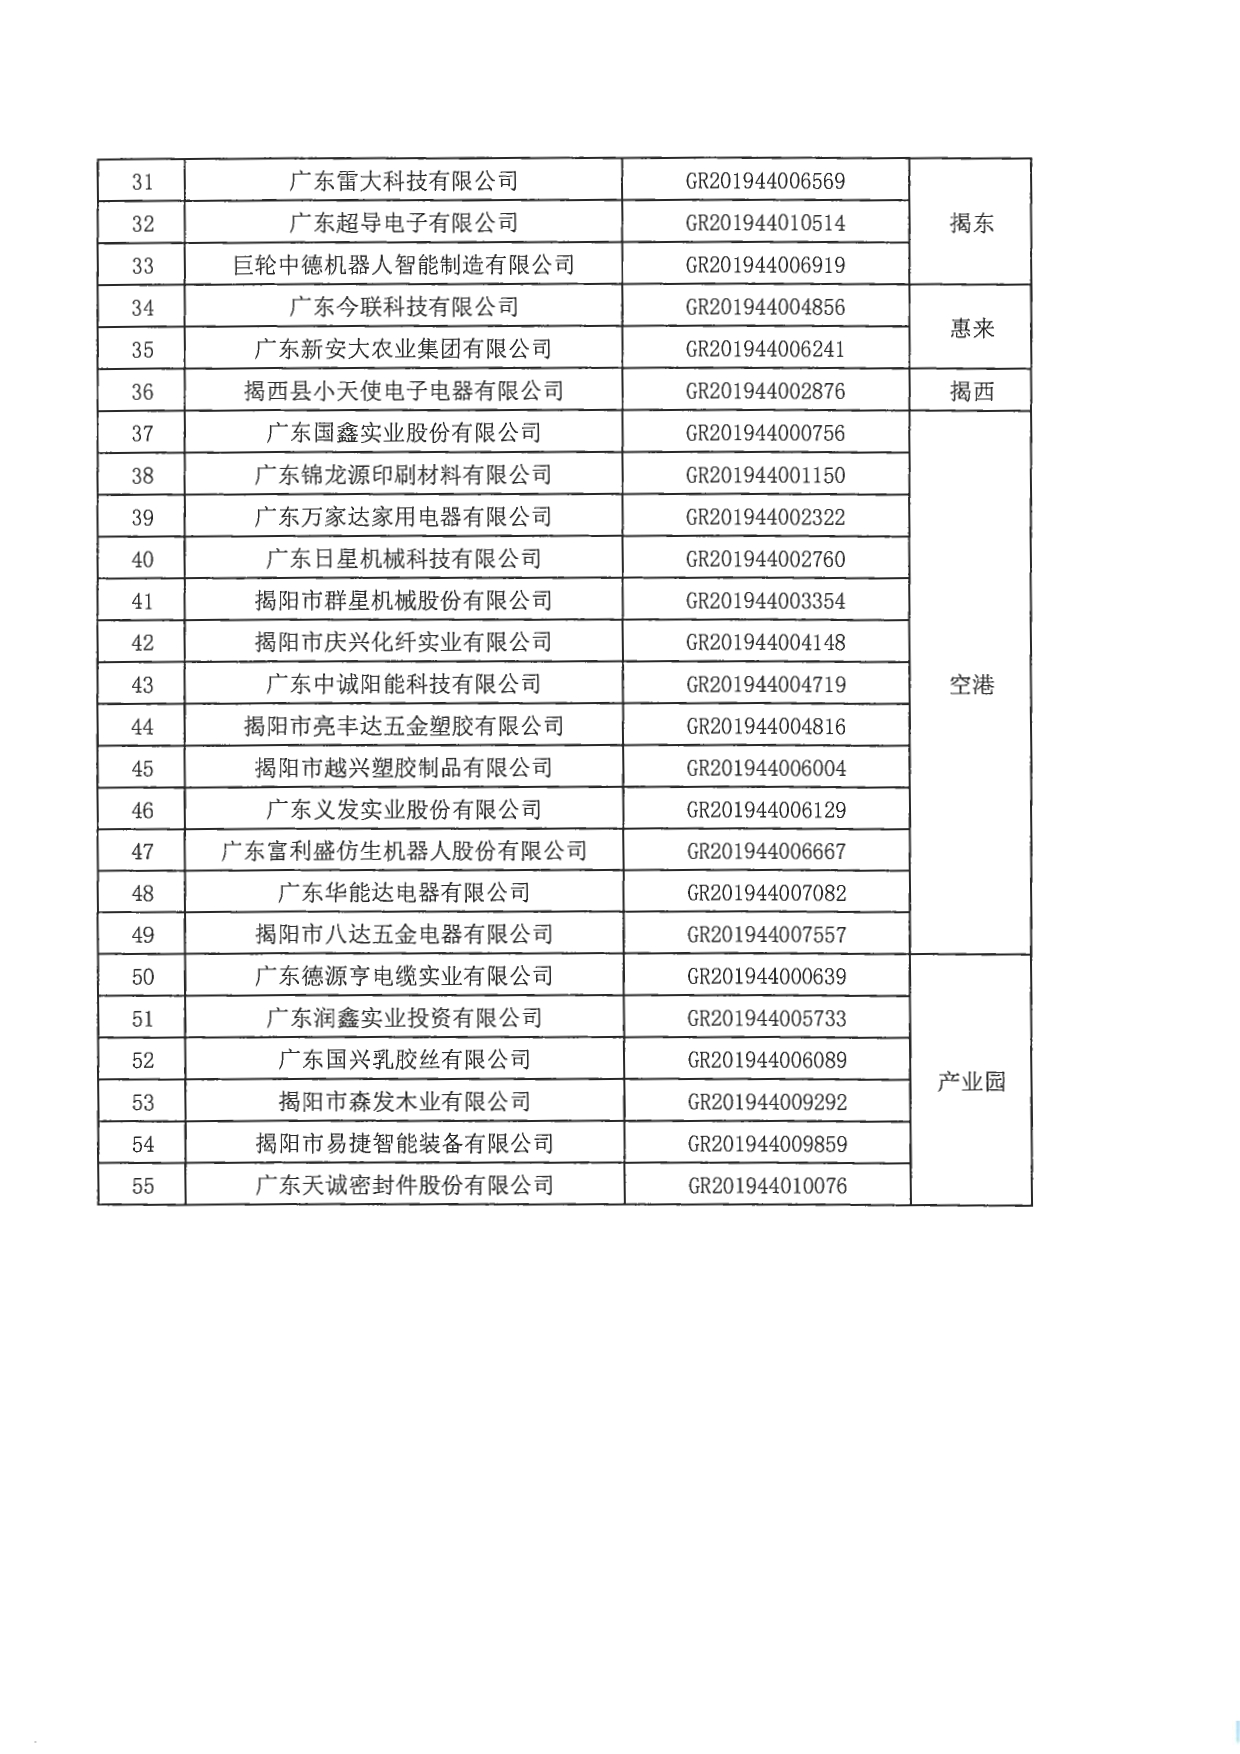 关于公布广东省2019年高新技术企业名单的通知_page-0006.jpg